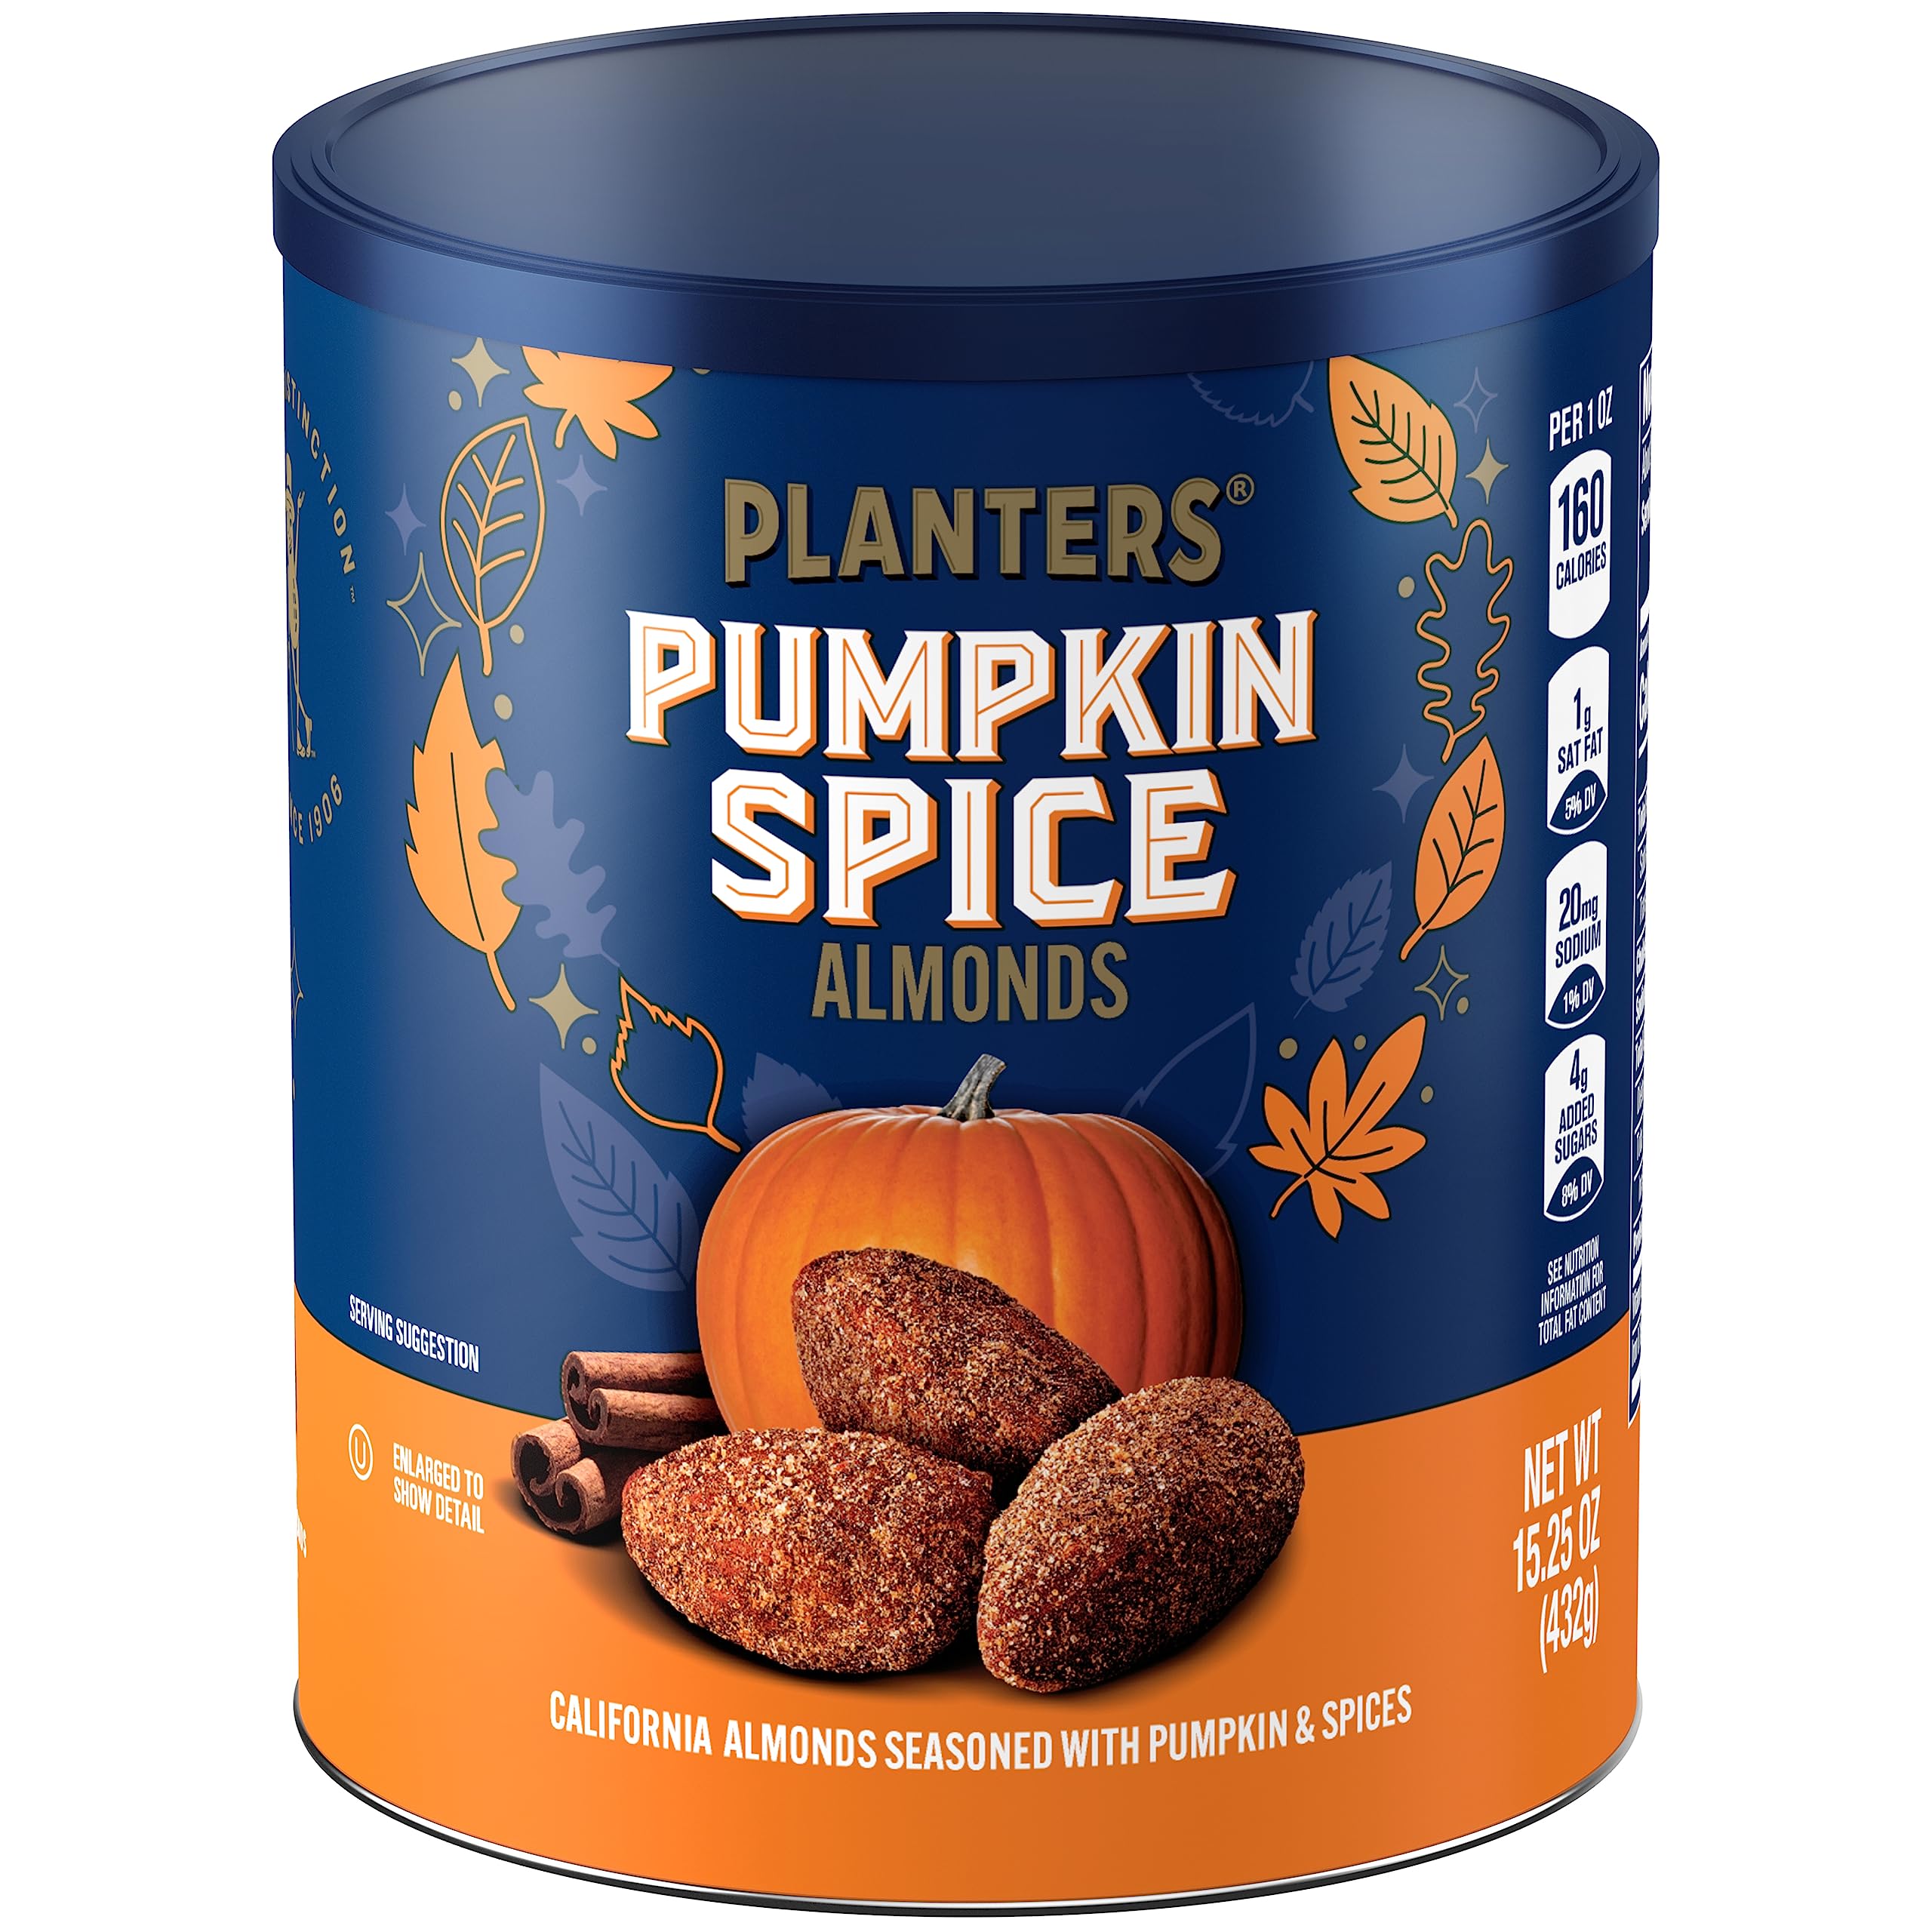 $4.54 w/ S&S: 15.25-Oz Planters Pumpkin Spice Almonds